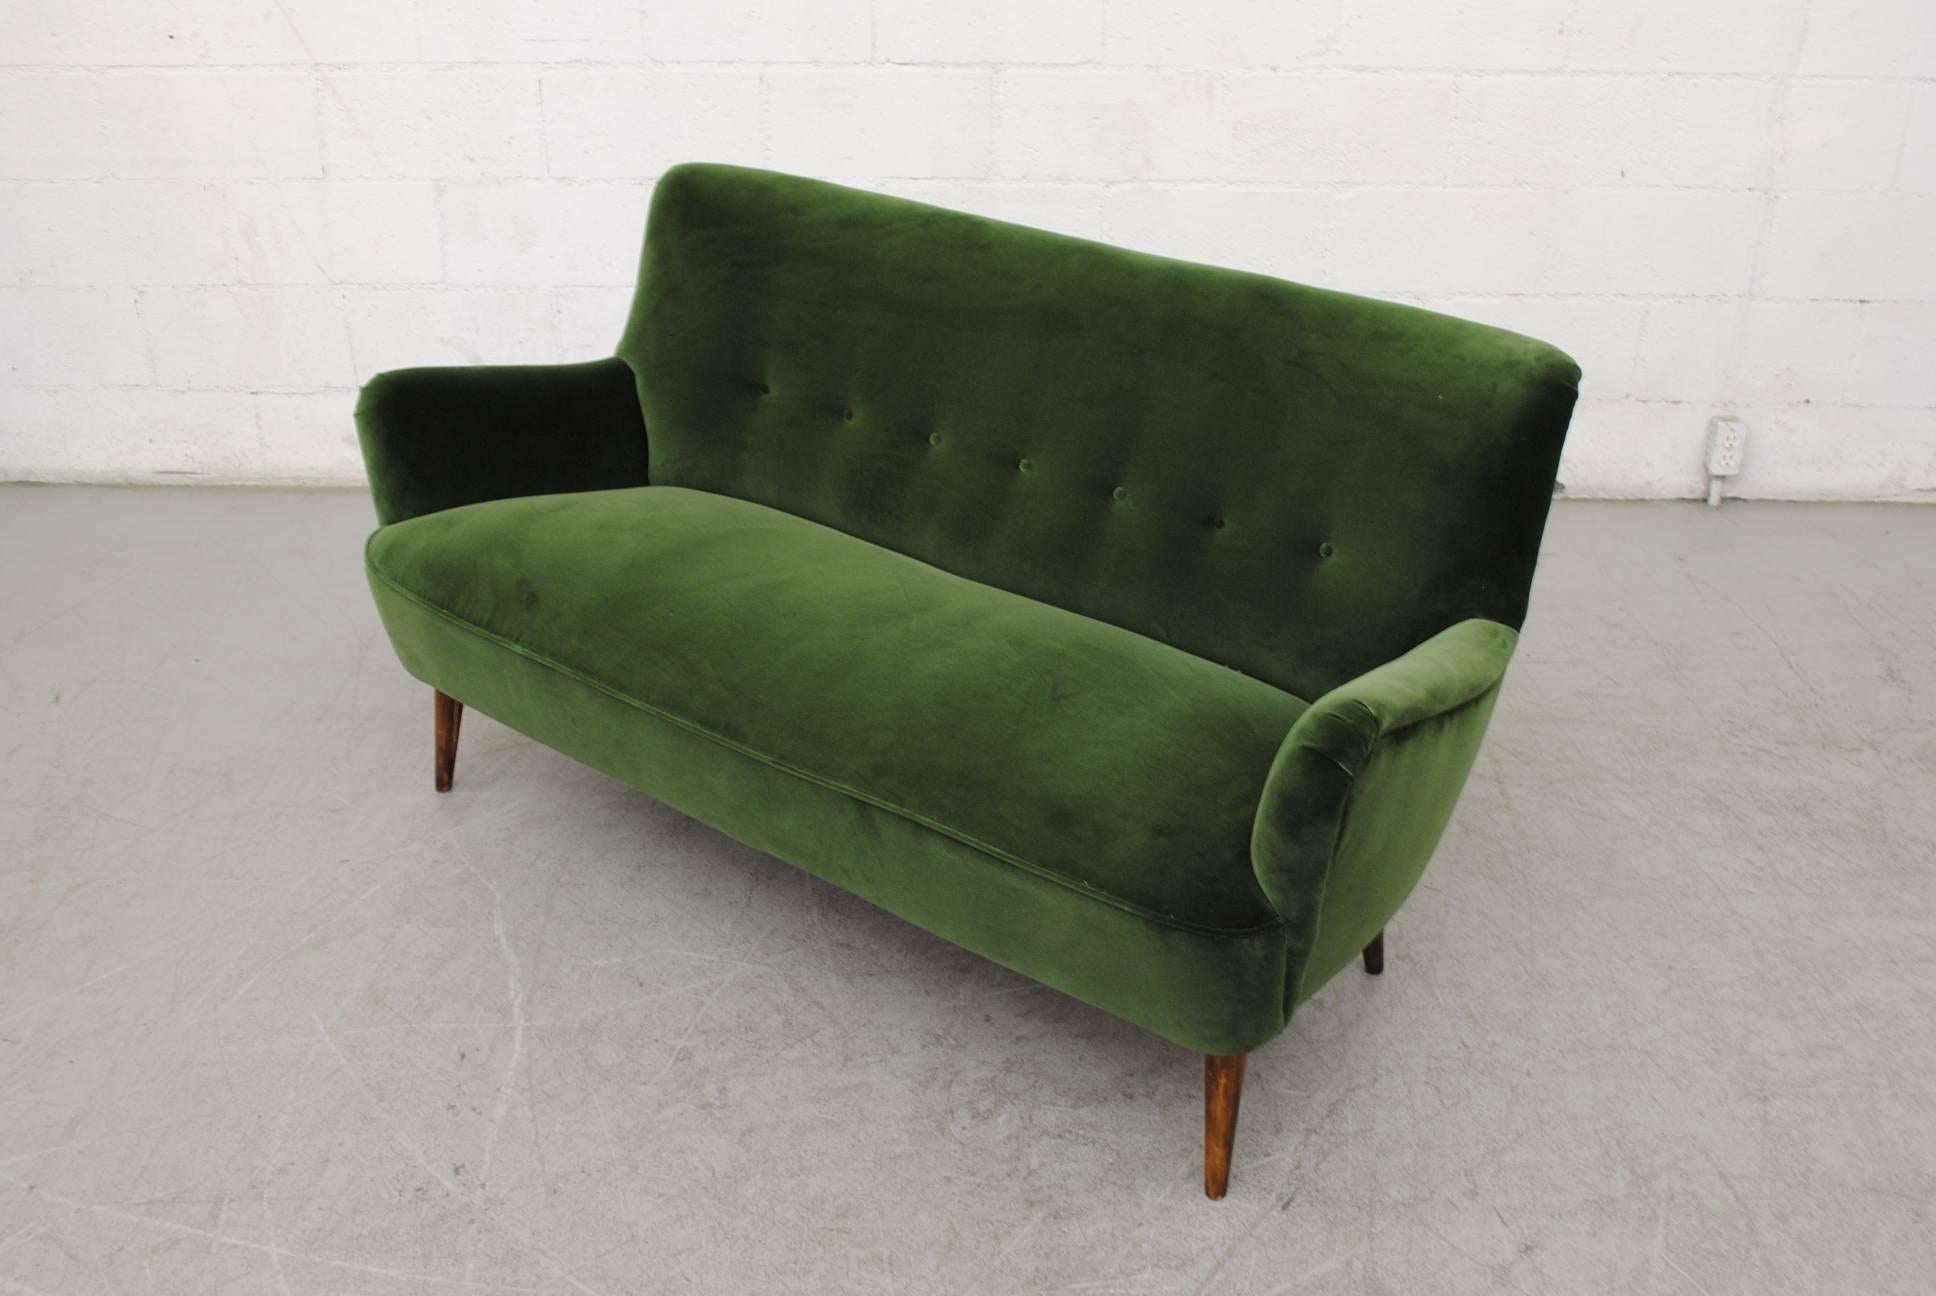 emerald green velvet couch